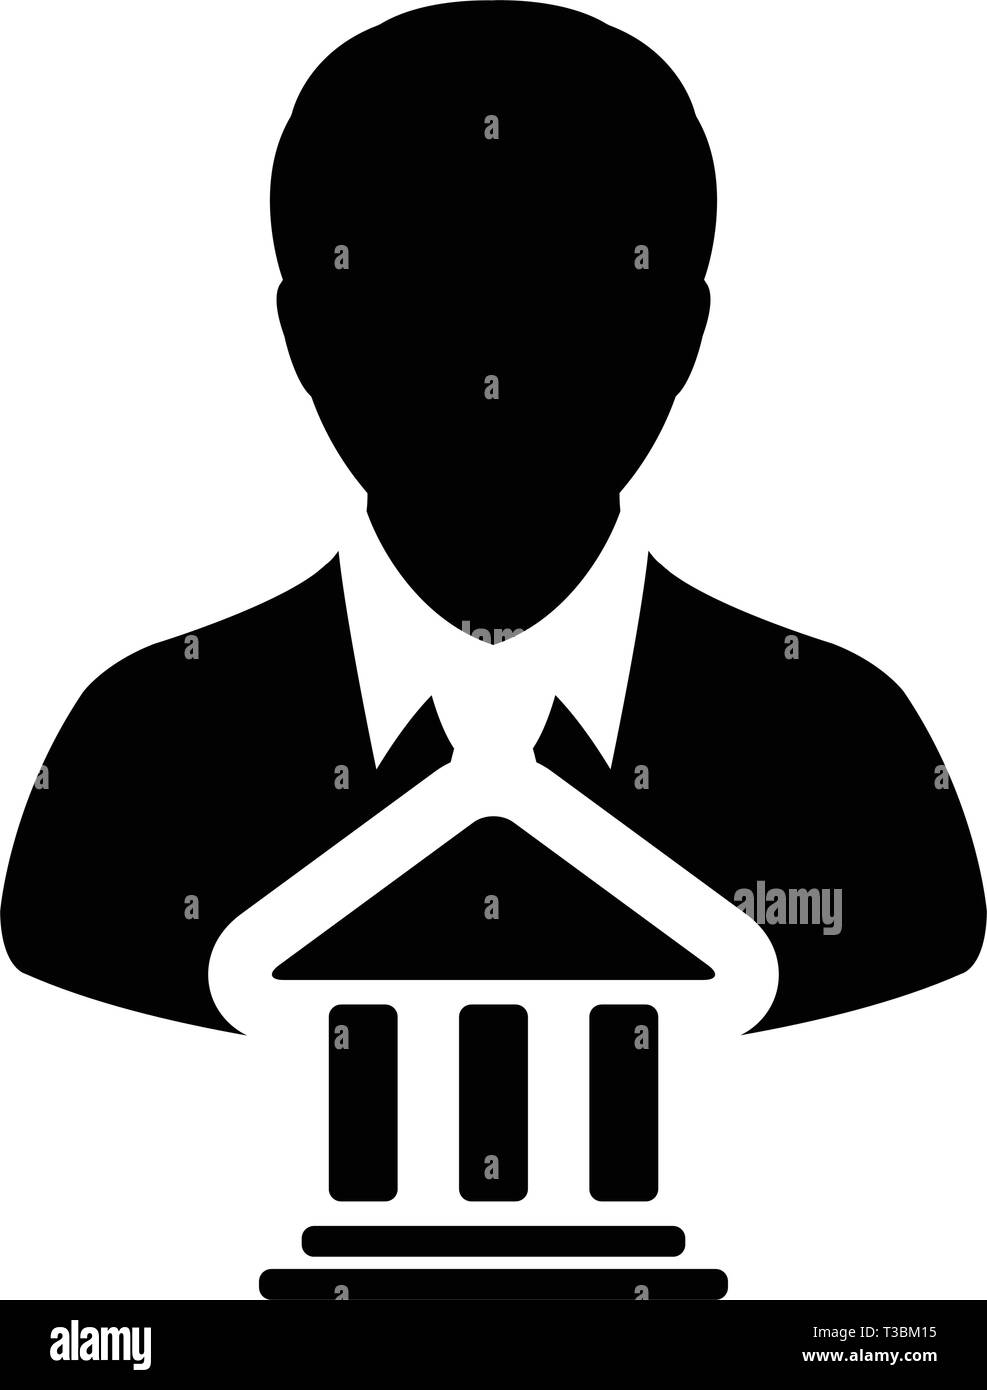 Einsparungen Symbol Vektor mit männliche Person Profil Avatar mit Gebäude Symbol für Banking und Finance in Glyph Piktogramm Abbildung Stock Vektor